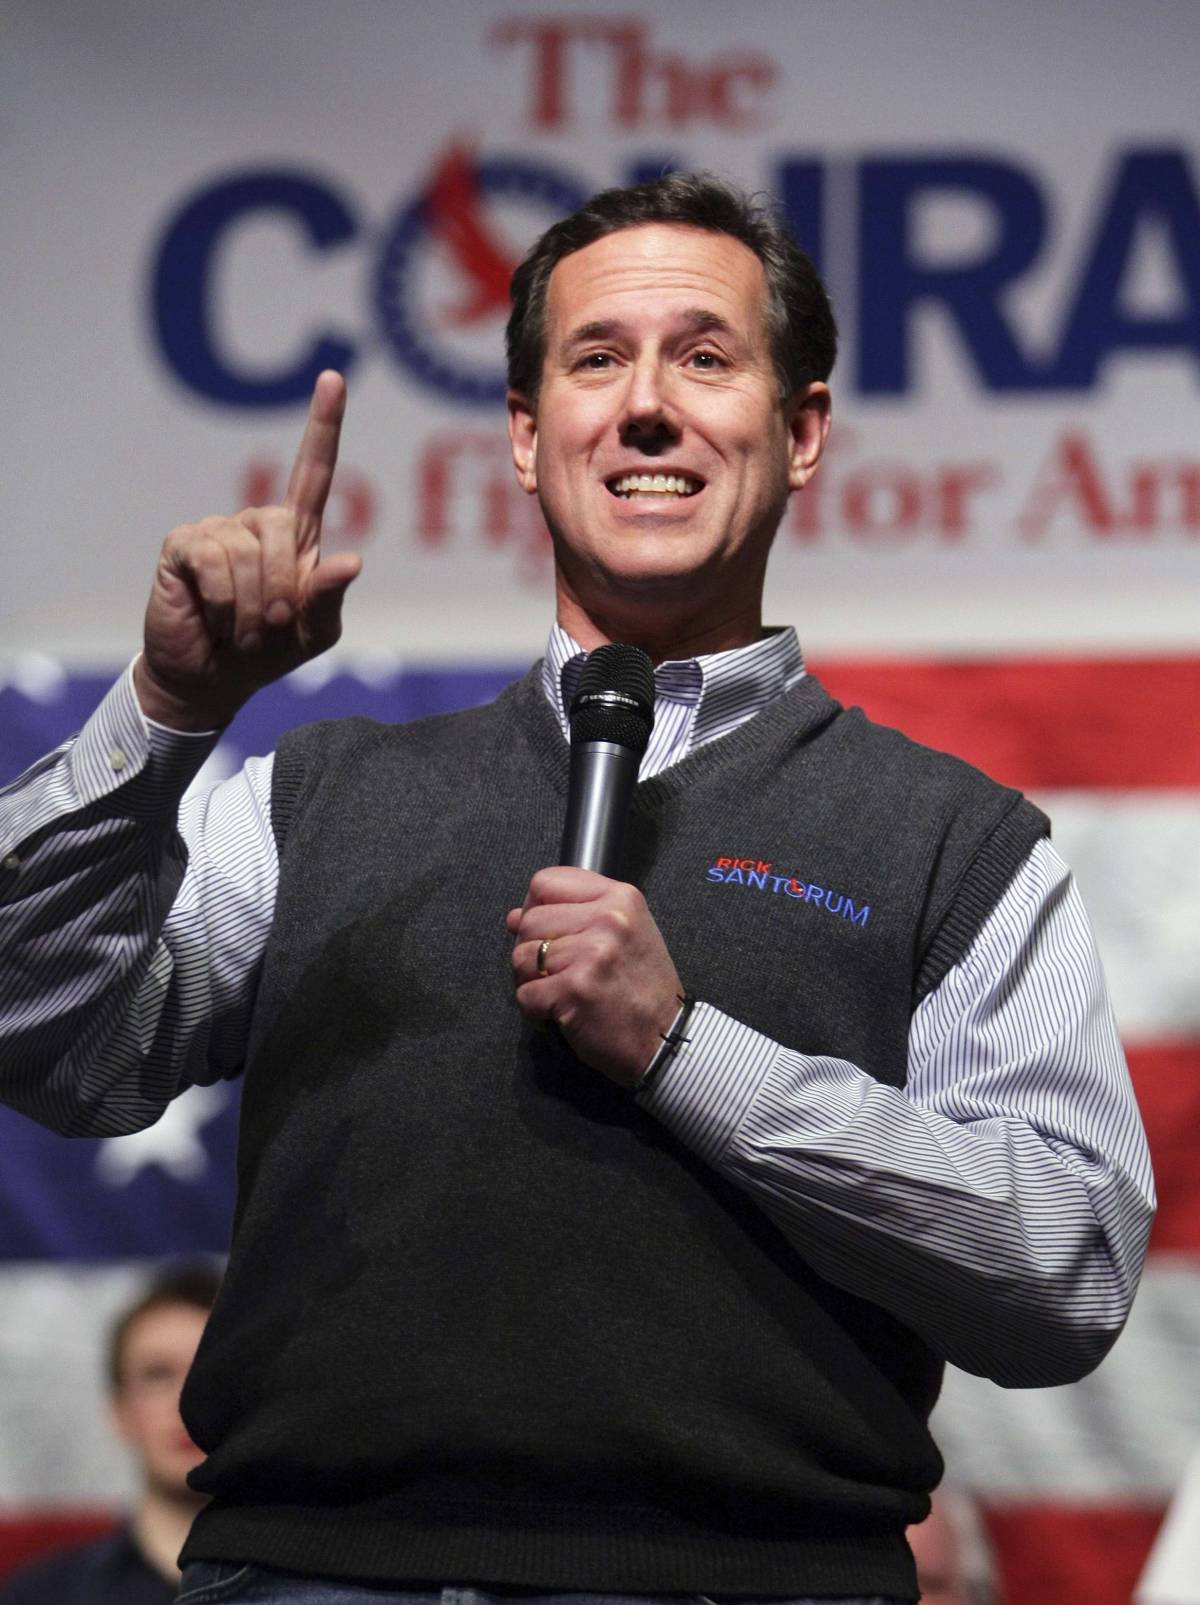 Santorum su Whitney Houston "Era solo un cattivo esempio"